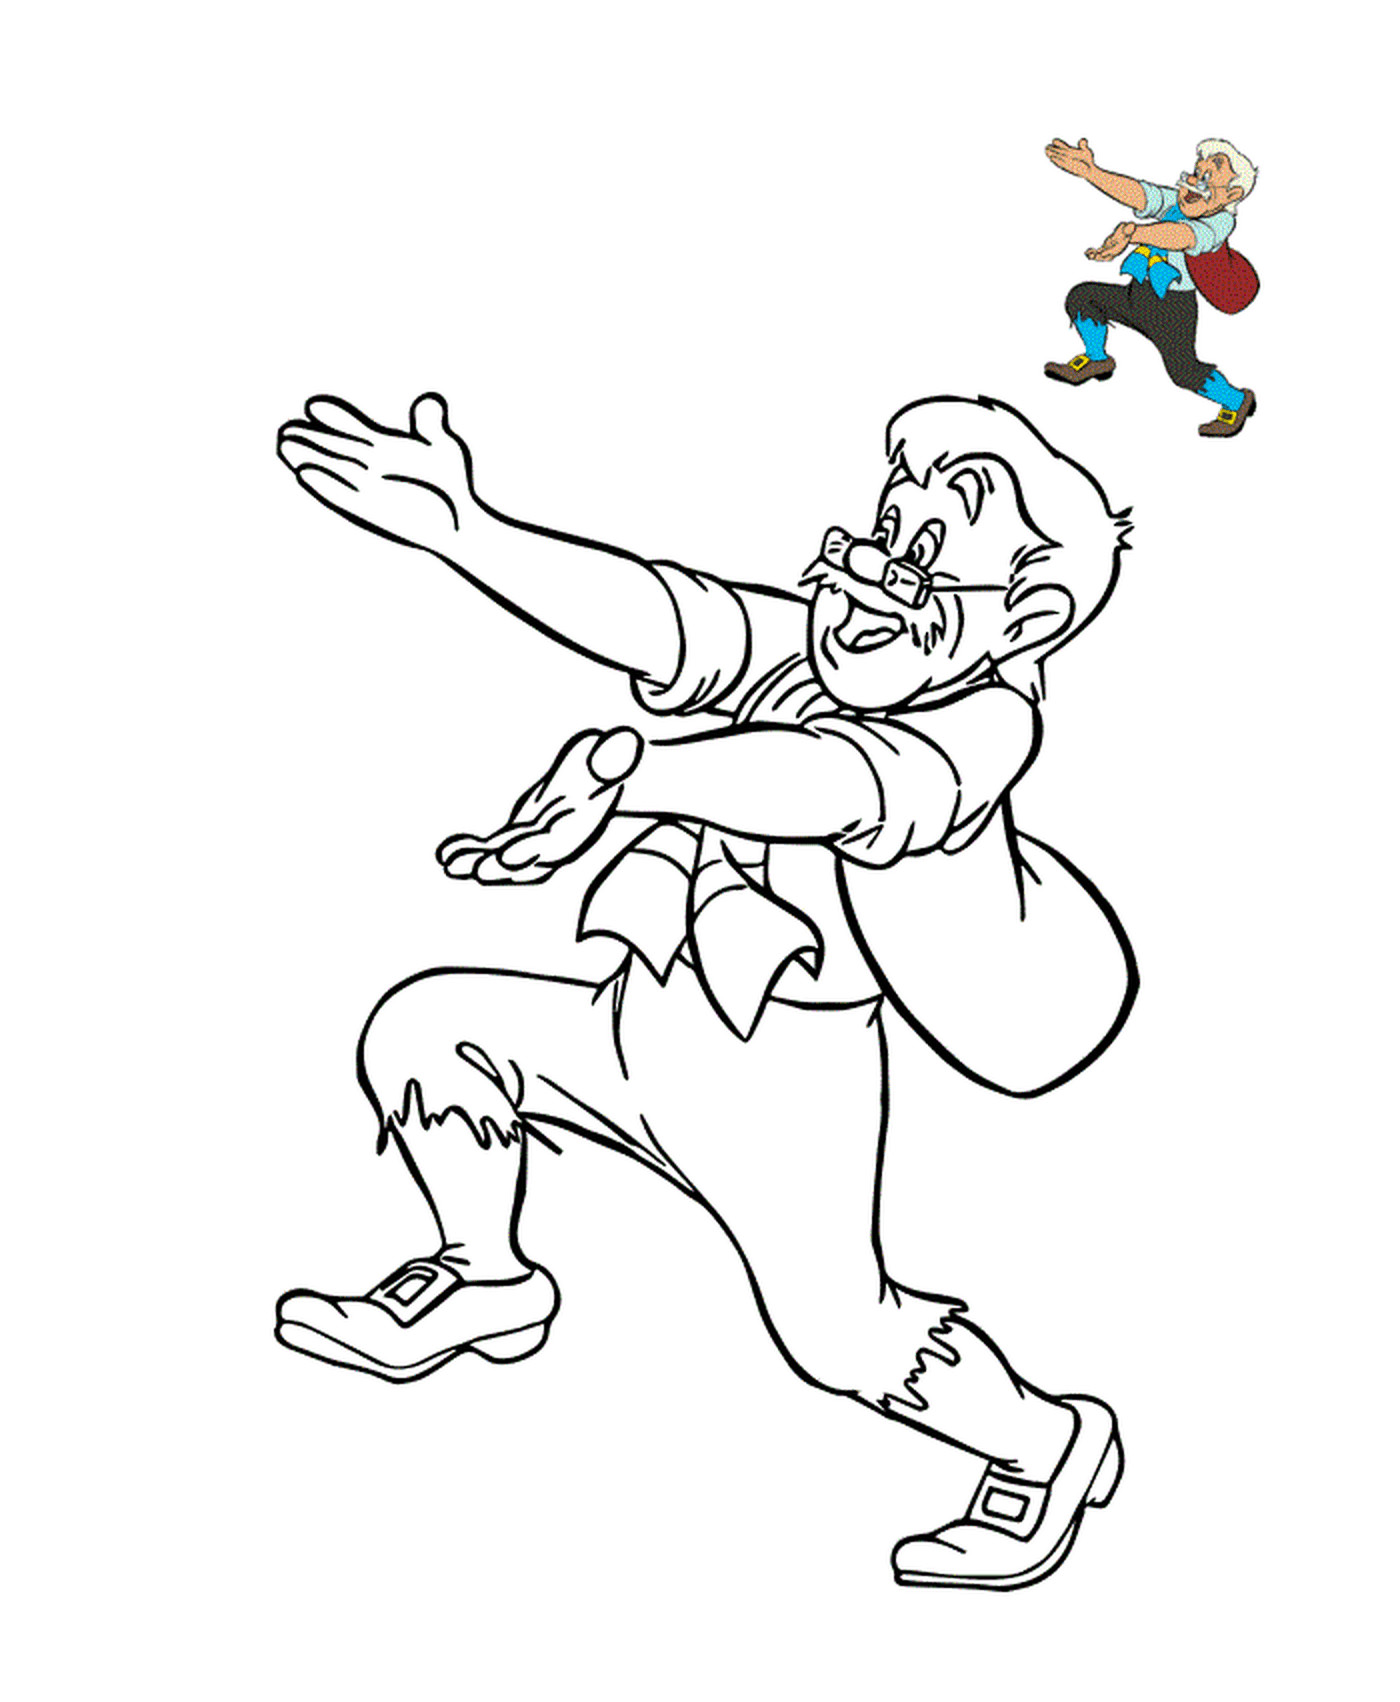  Geppetto, bescheidener italienischer Zimmermann 